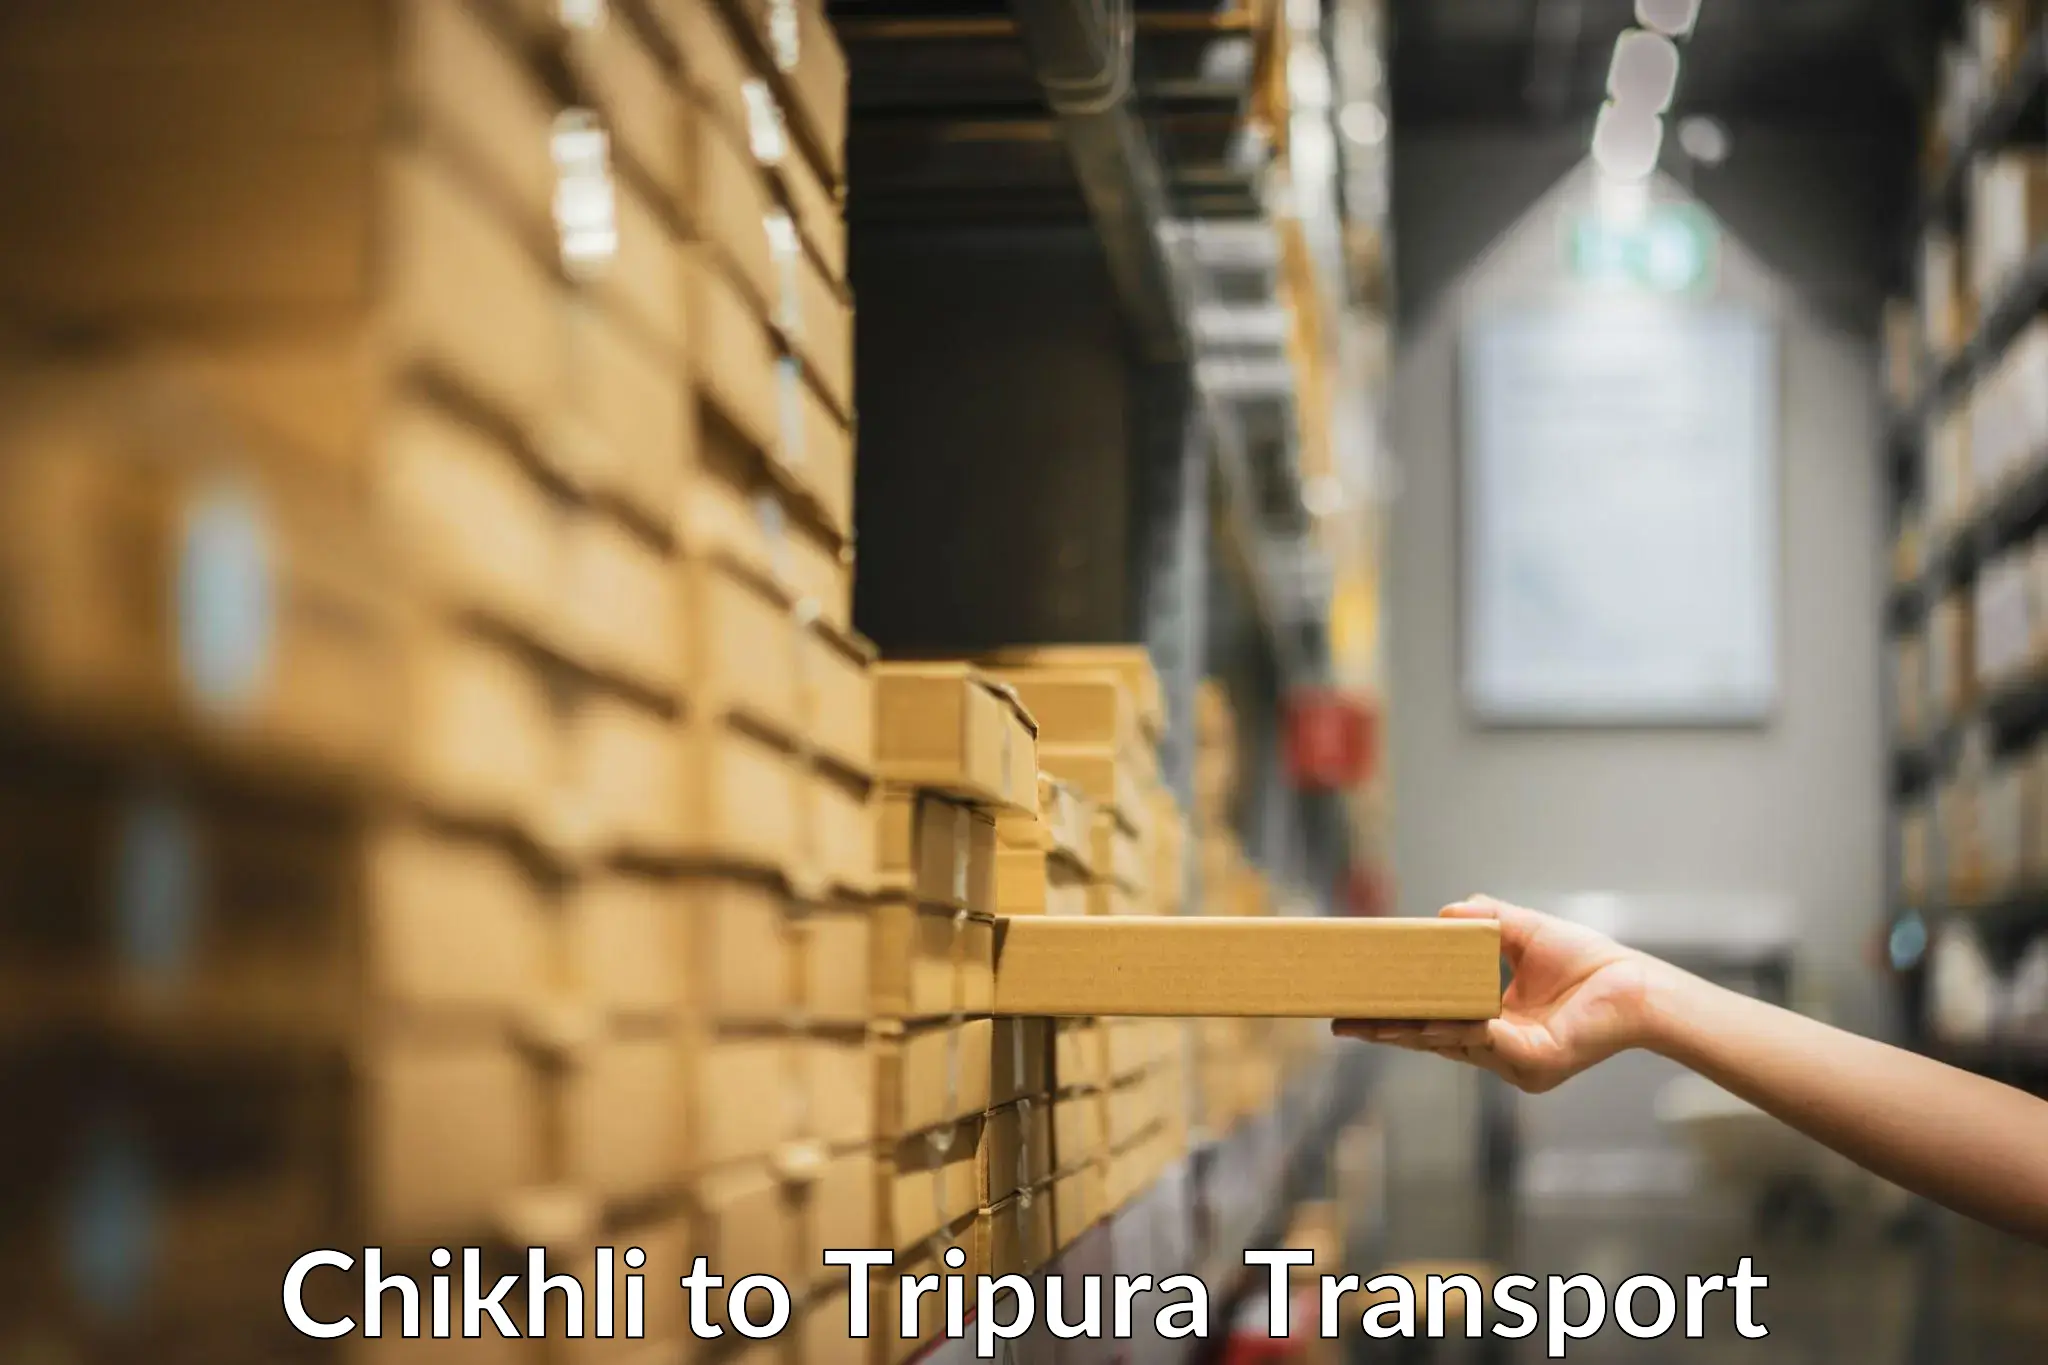 Truck transport companies in India Chikhli to Bishalgarh